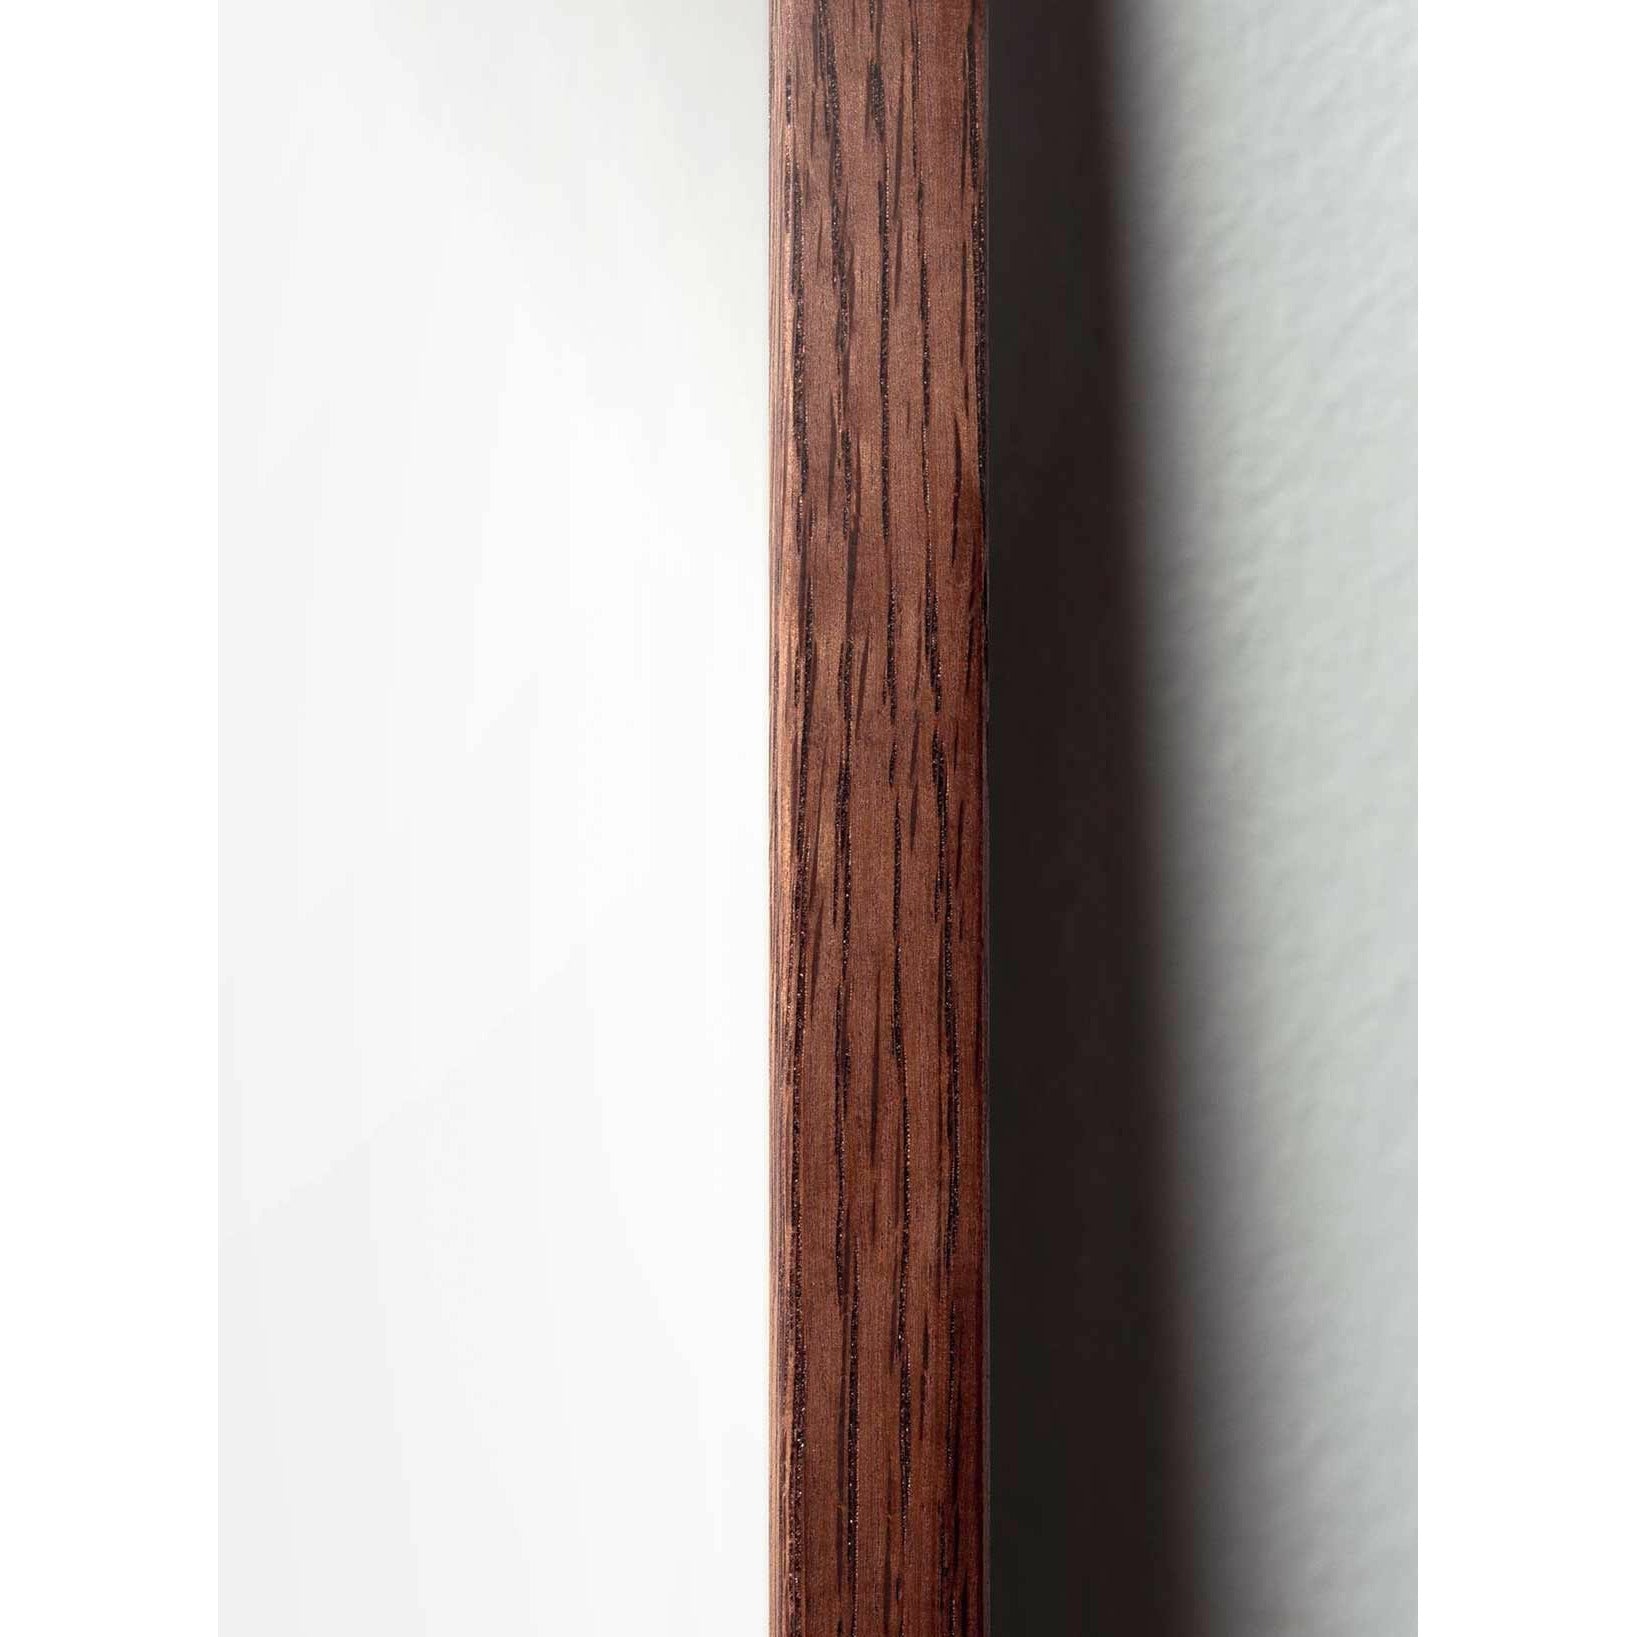 Plakát Pine Cone Line Pine Cone, rám vyrobený z tmavého dřeva 70x100 cm, bílé pozadí